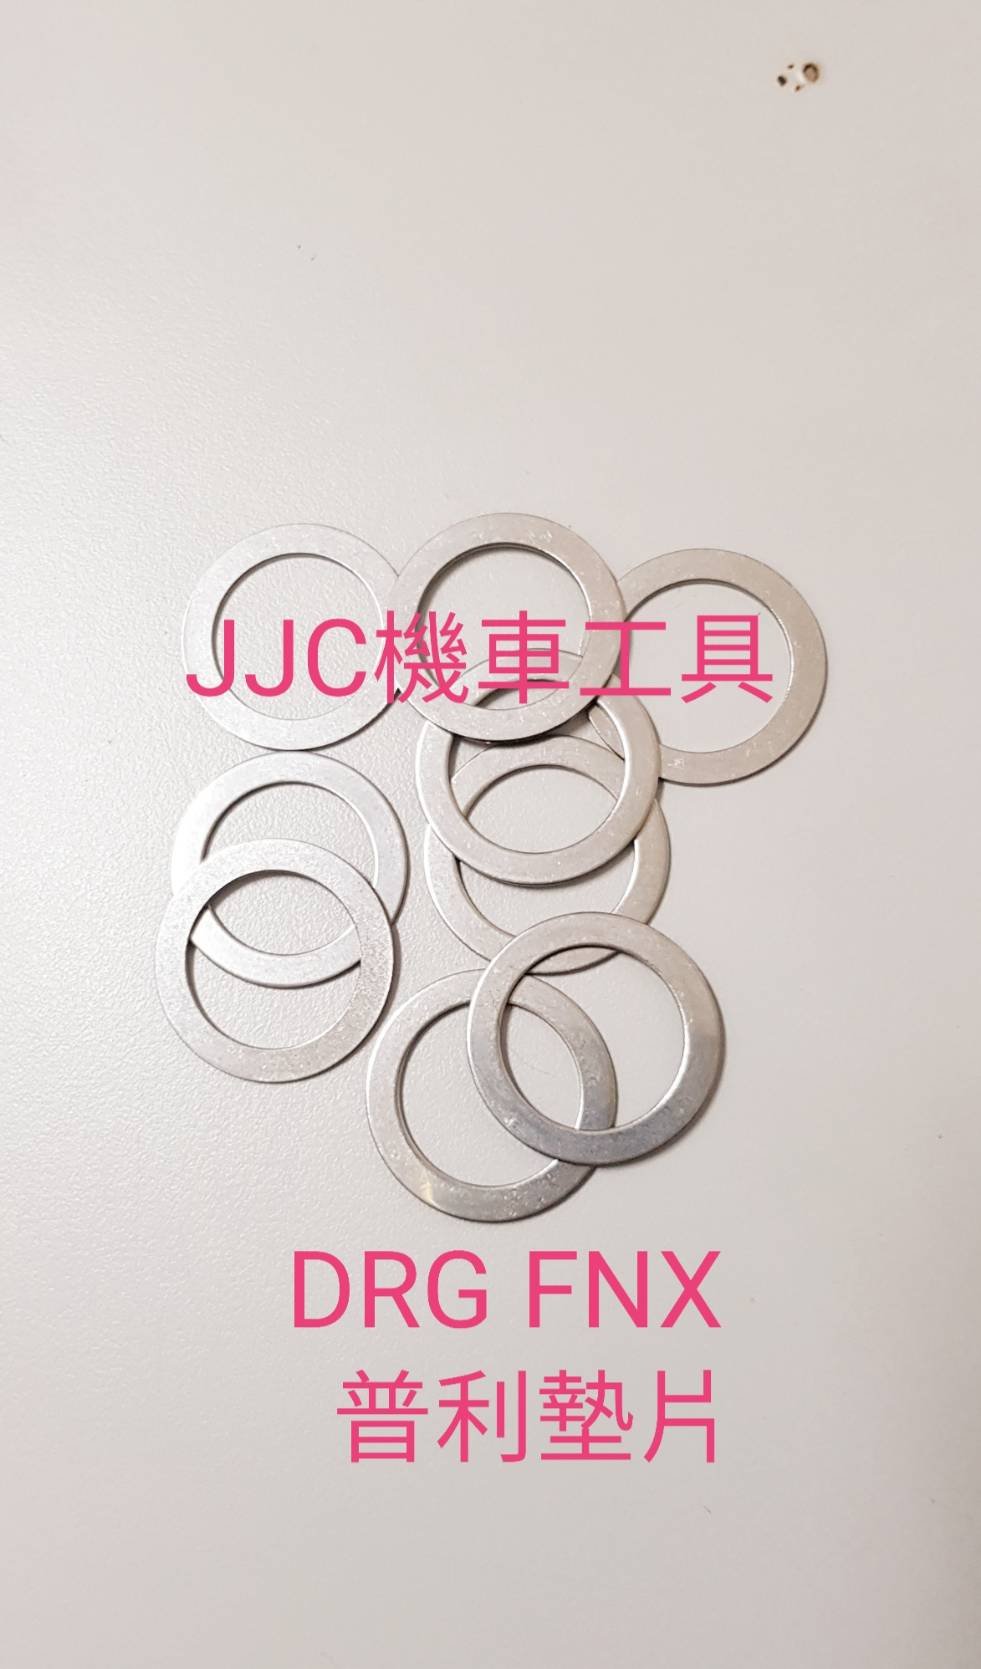 JJC機車工具 現貨供應 不鏽鋼光陽KRV三陽 DRG 普利墊片 白鐵墊片 不鏽鋼墊片 驅動盤墊片 普利盤墊片 傳動墊片